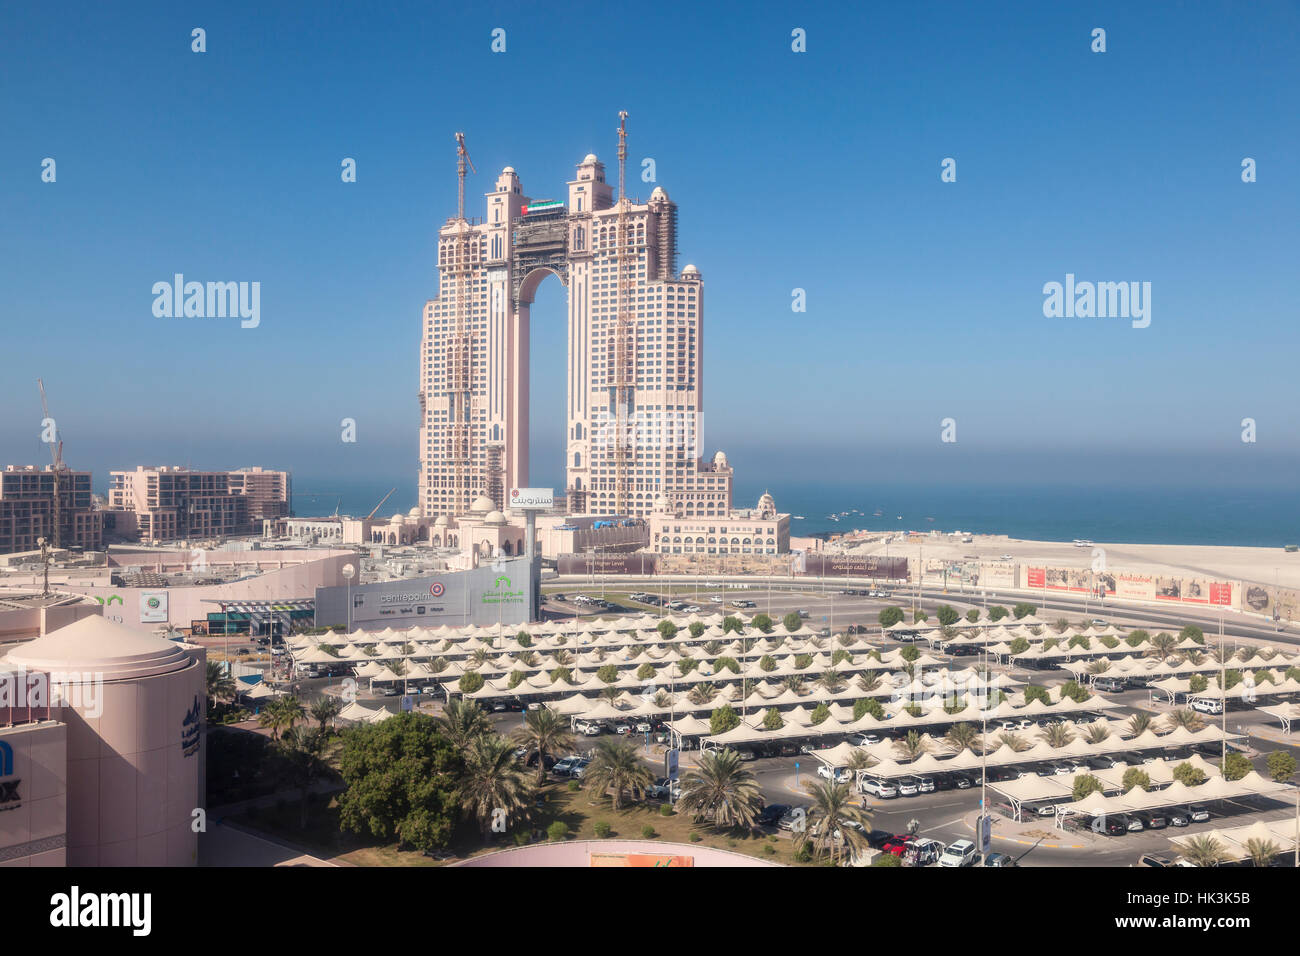 Fairmont Marina edificio residencial en Abu Dhabi, Emiratos Árabes Unidos Foto de stock